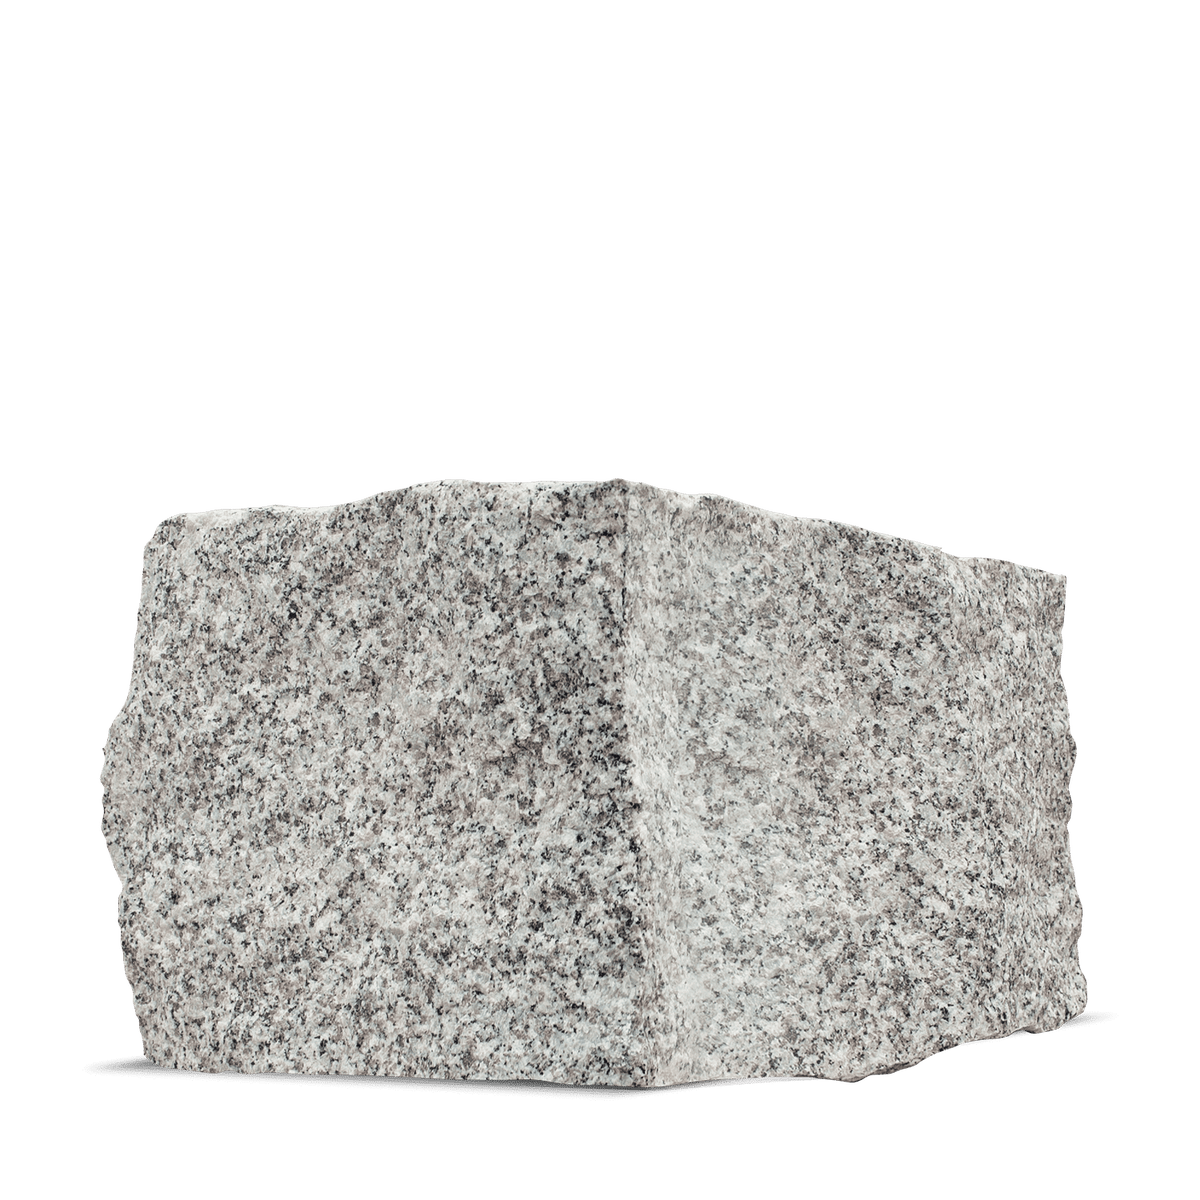 Galamio Granit Mauersteine 40*25*25 » gebrochen « 1000kg Palette